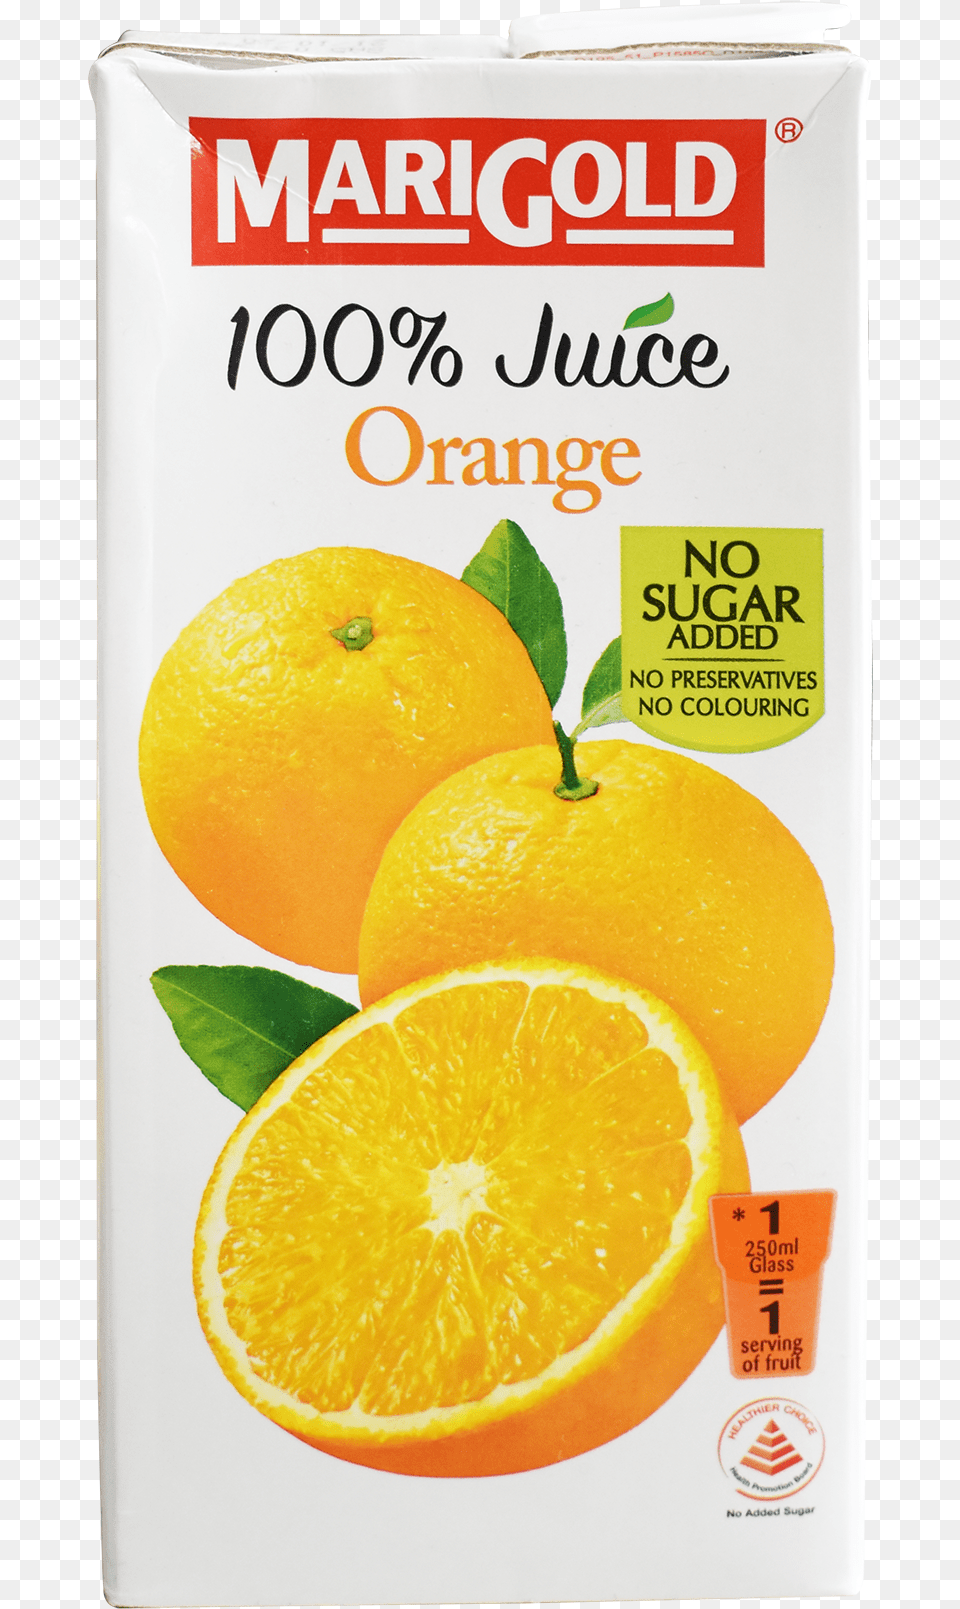 Marigold Orange 100 1ltr U2013 Cjs Supermarket Marigold, Beverage, Plant, Juice, Fruit Free Png